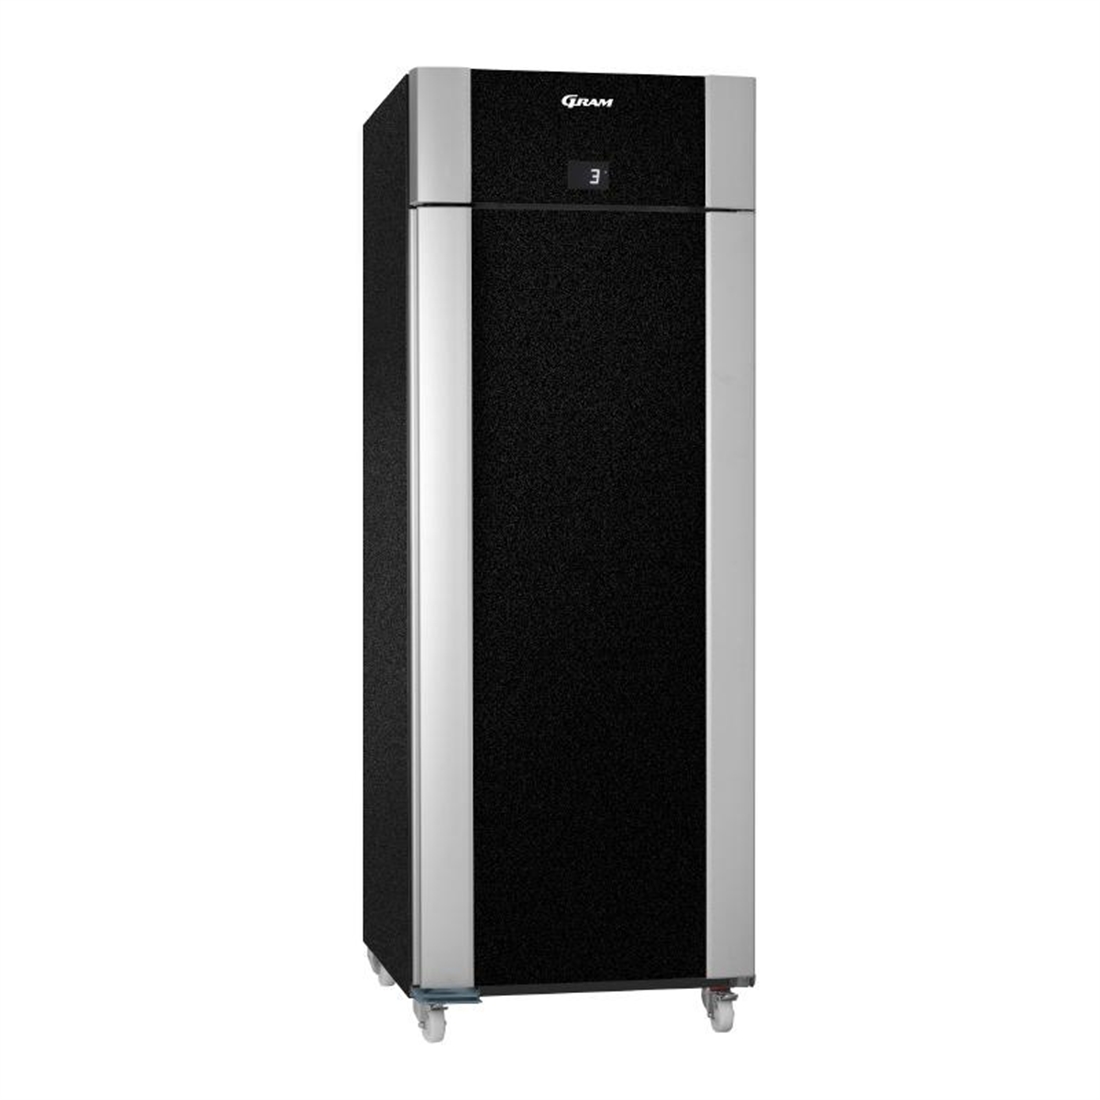 Gram Eco Twin 1 Door 601Ltr Freezer Black F 82 BAG C1 4N